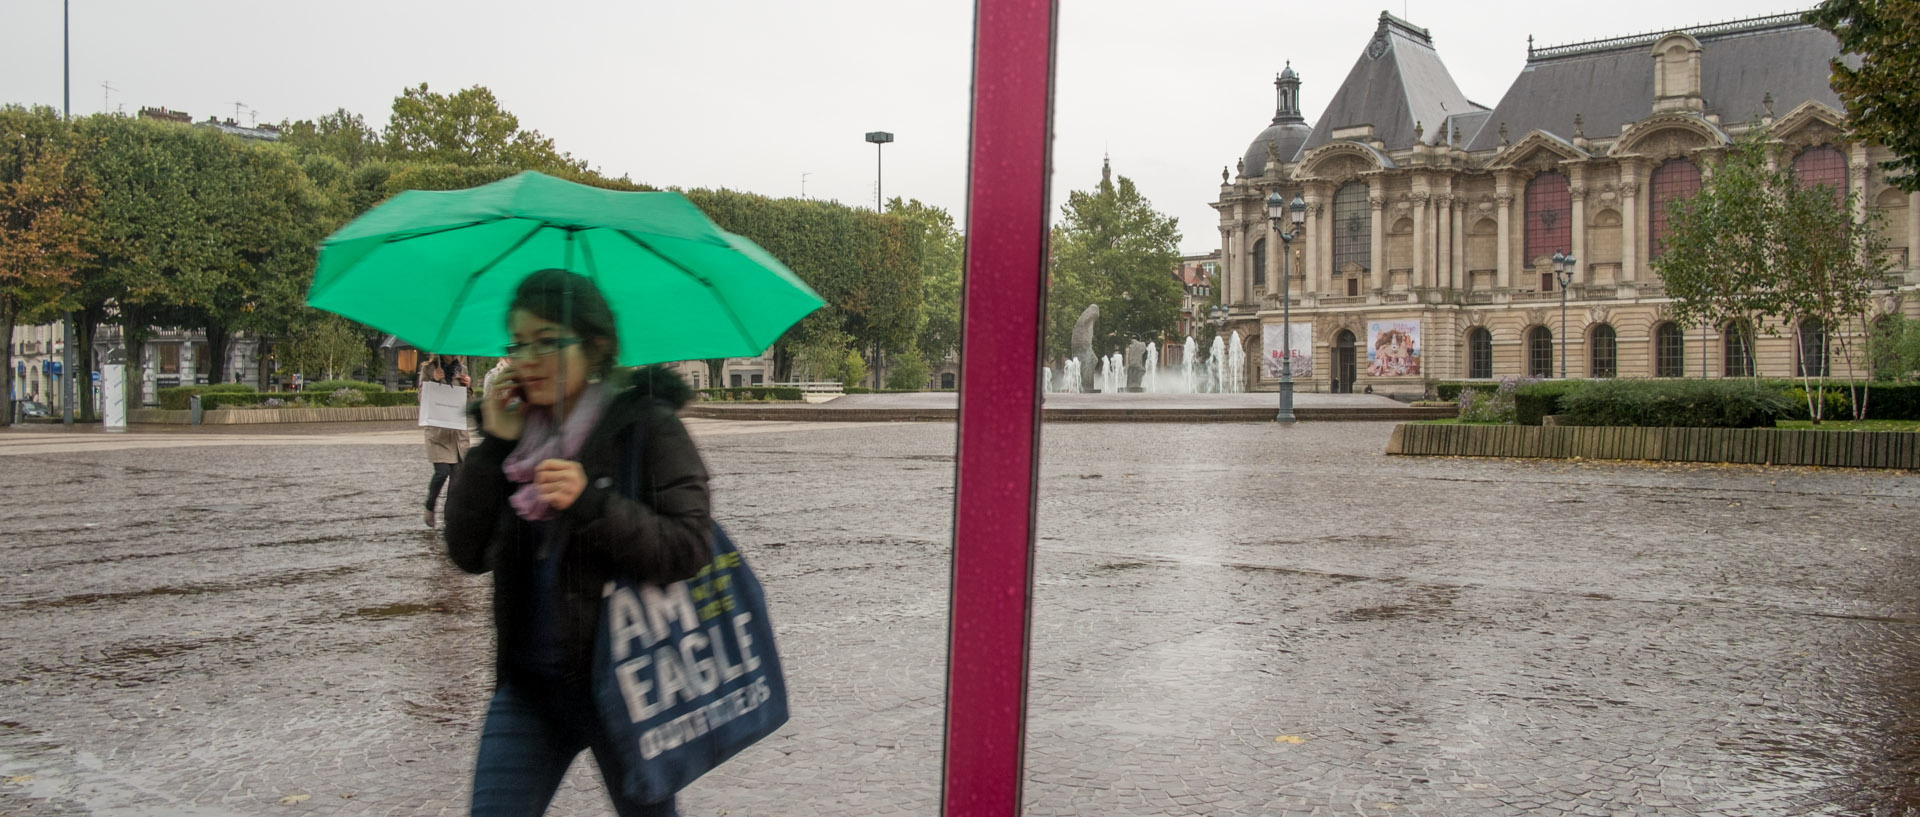 La place de la République sous la pluie, à Lille.